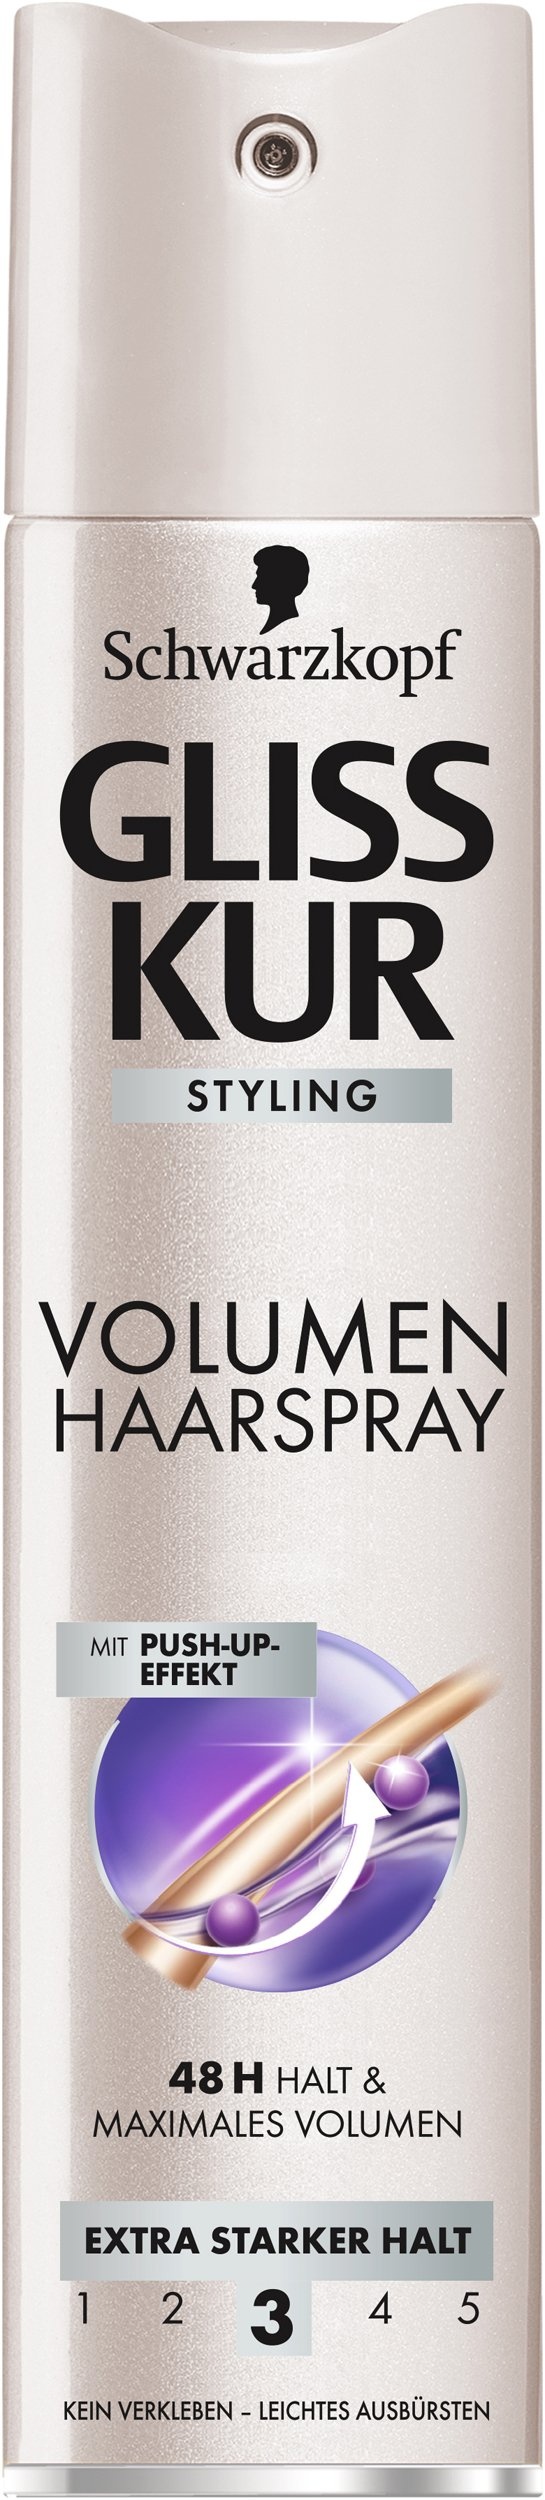 Schwarzkopf Gliss Kur Volumen Haarspray, extra starker Halt, 250 ml